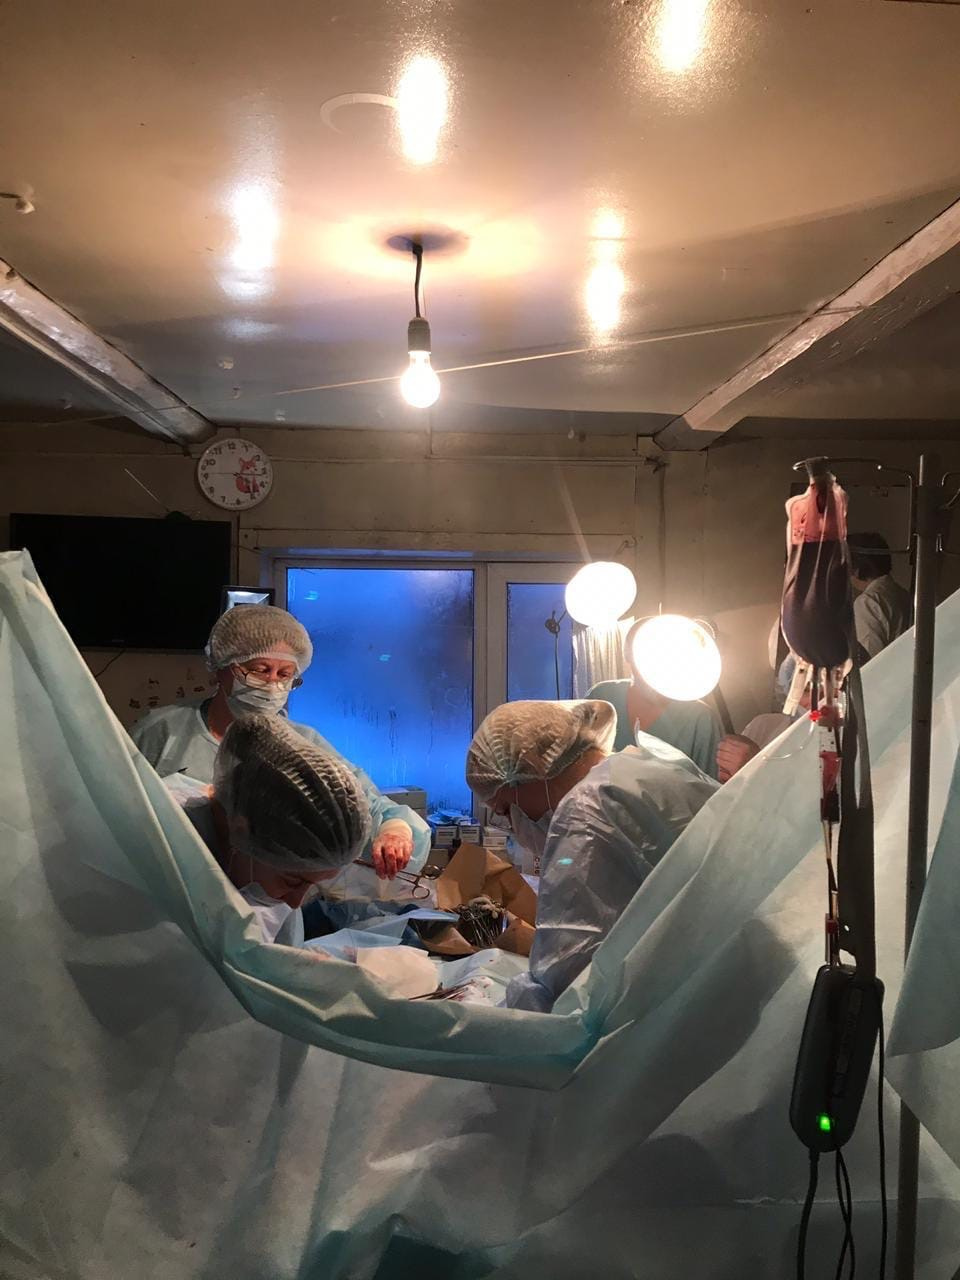 С лампой в руках, но не в операционной, а посреди обычной комнаты — в таких условиях пришлось работать врачам